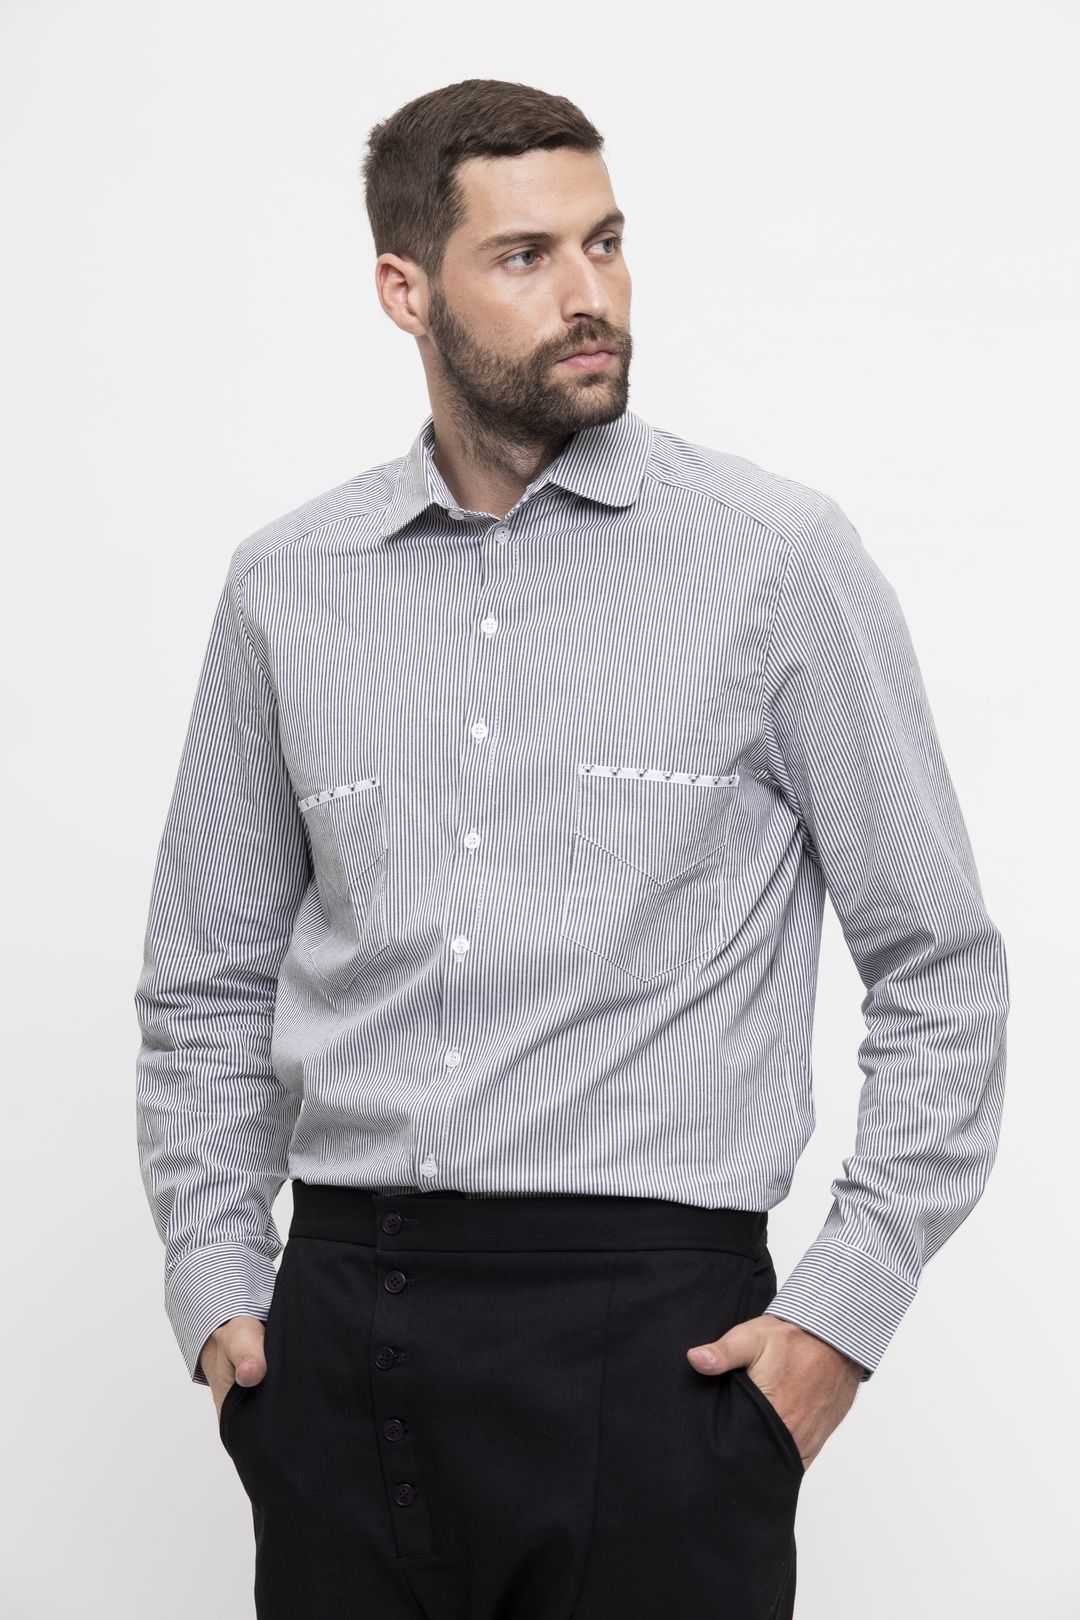 Unisex Buttoned Shirt - Ayen